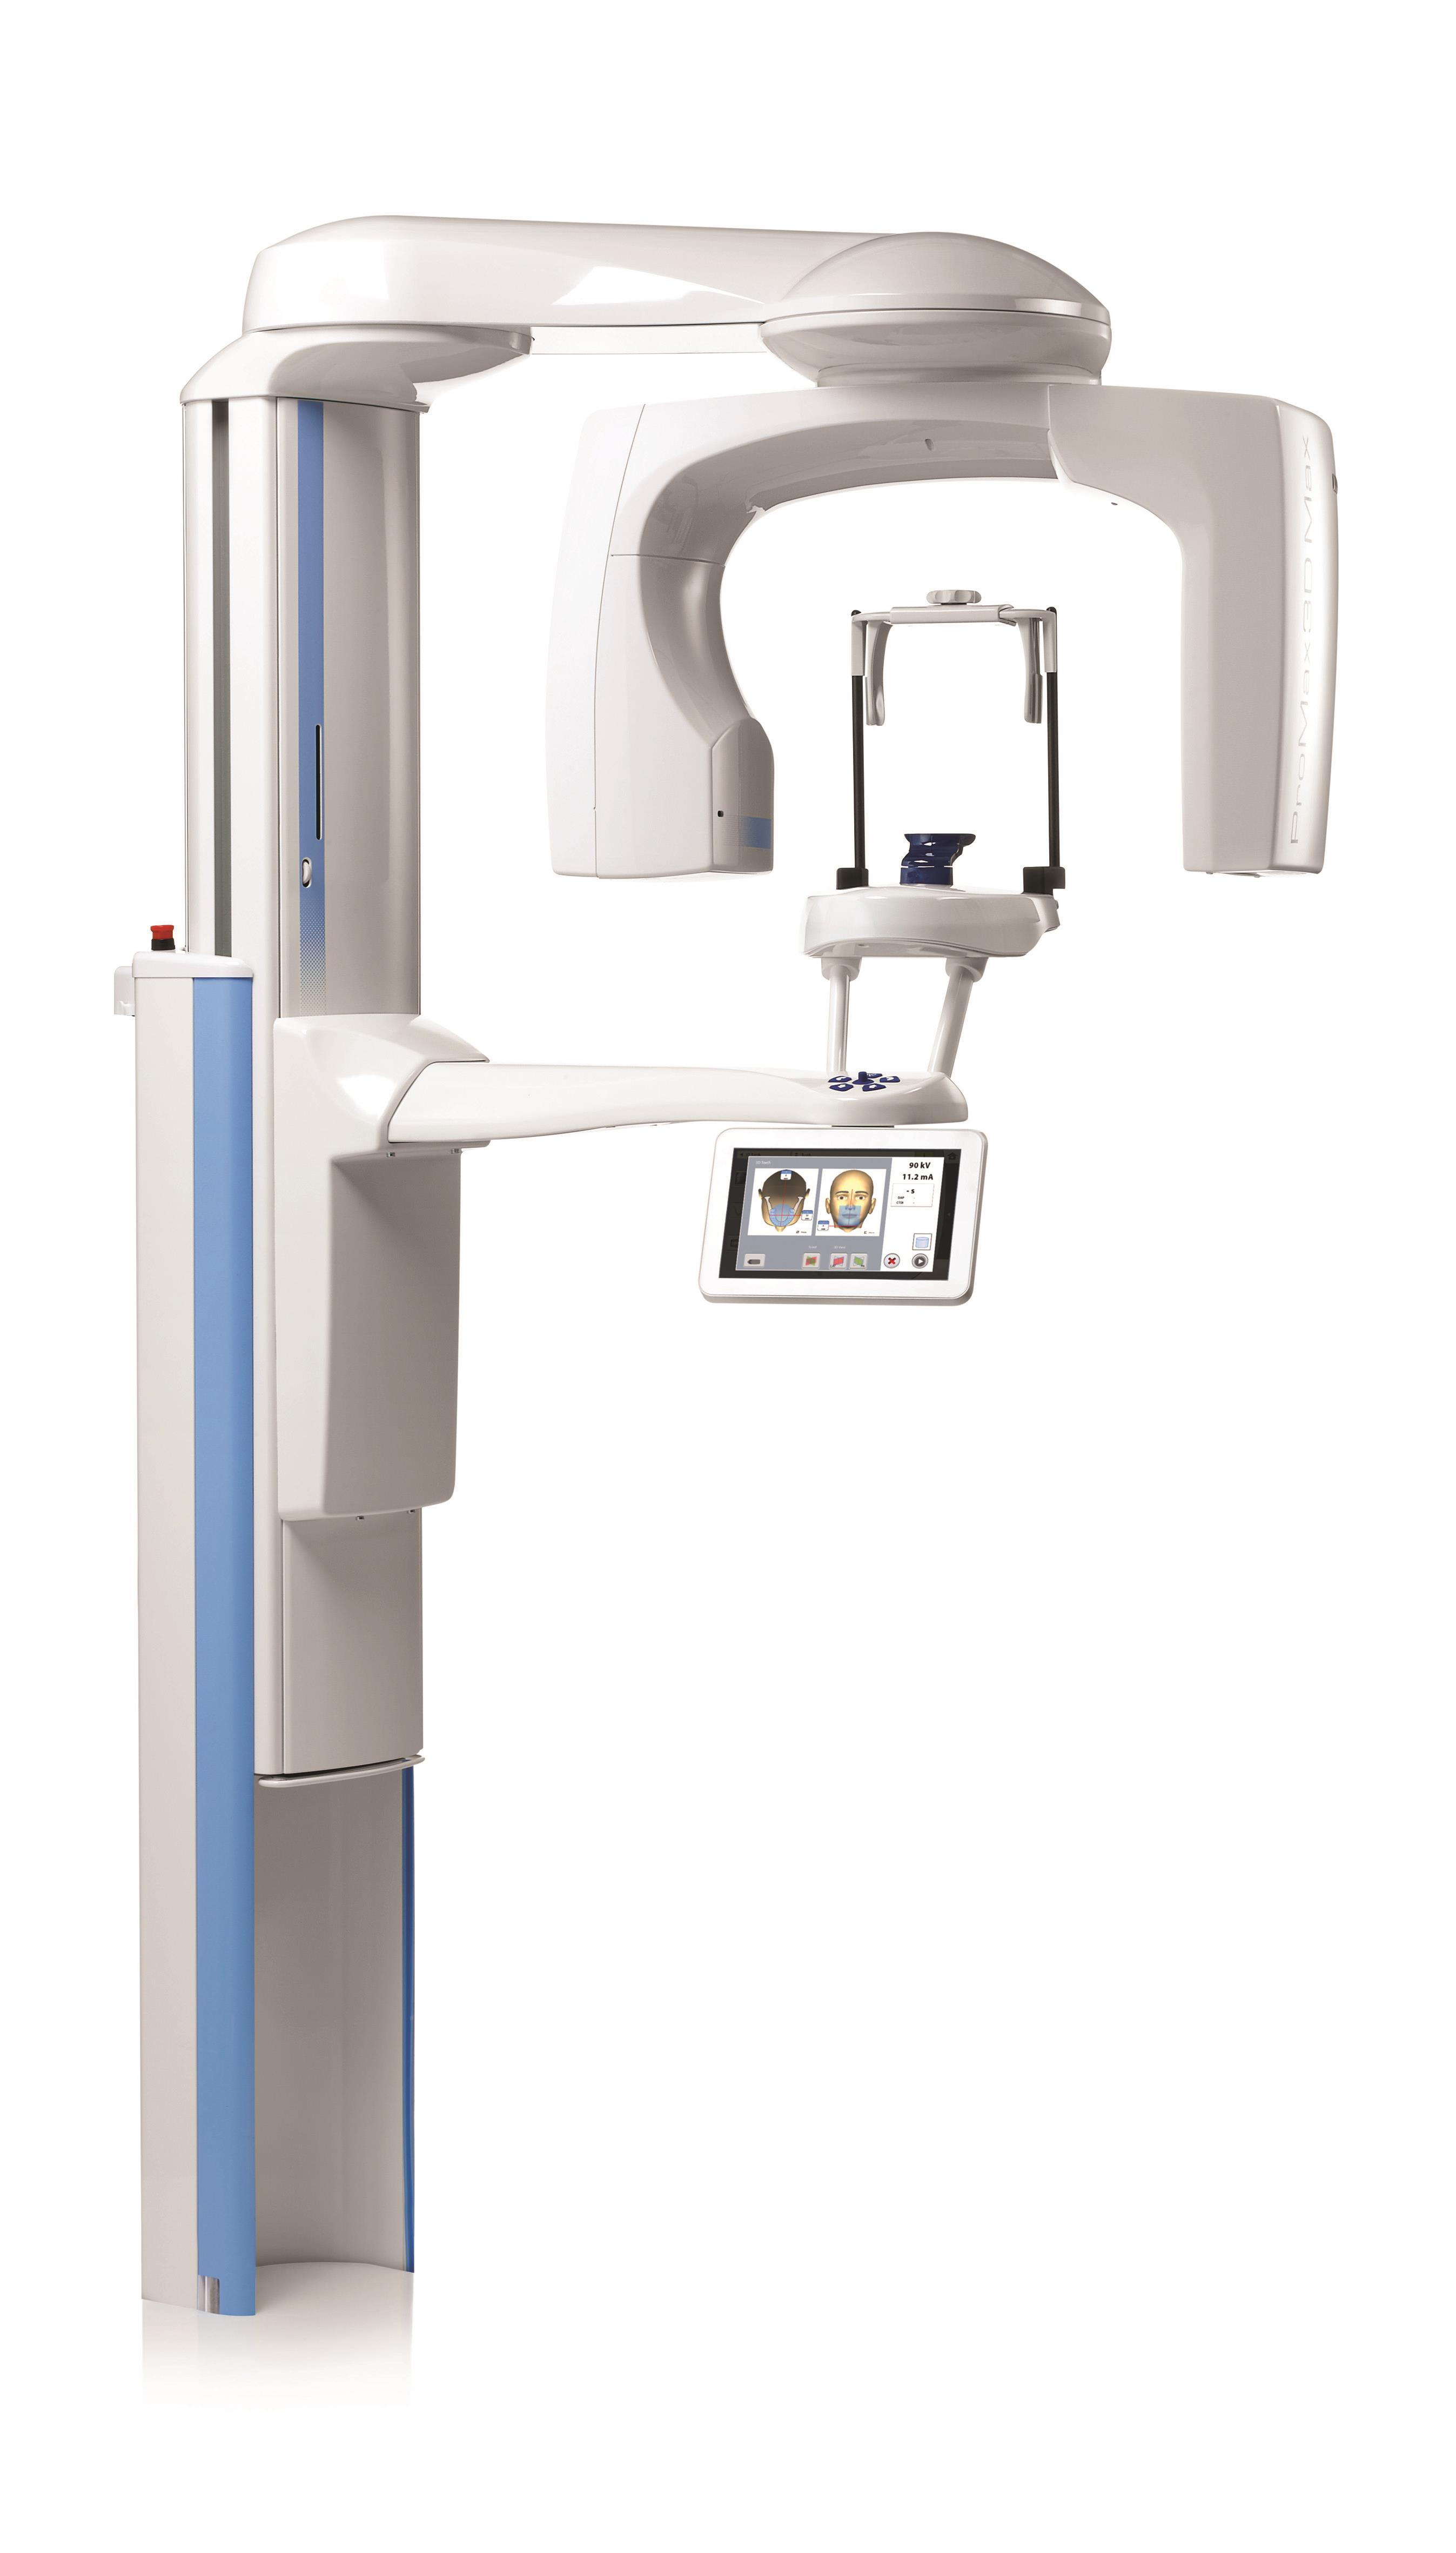 Nuove funzionalità e miglioramenti alle unità radiografiche Planmeca ProMax 3D